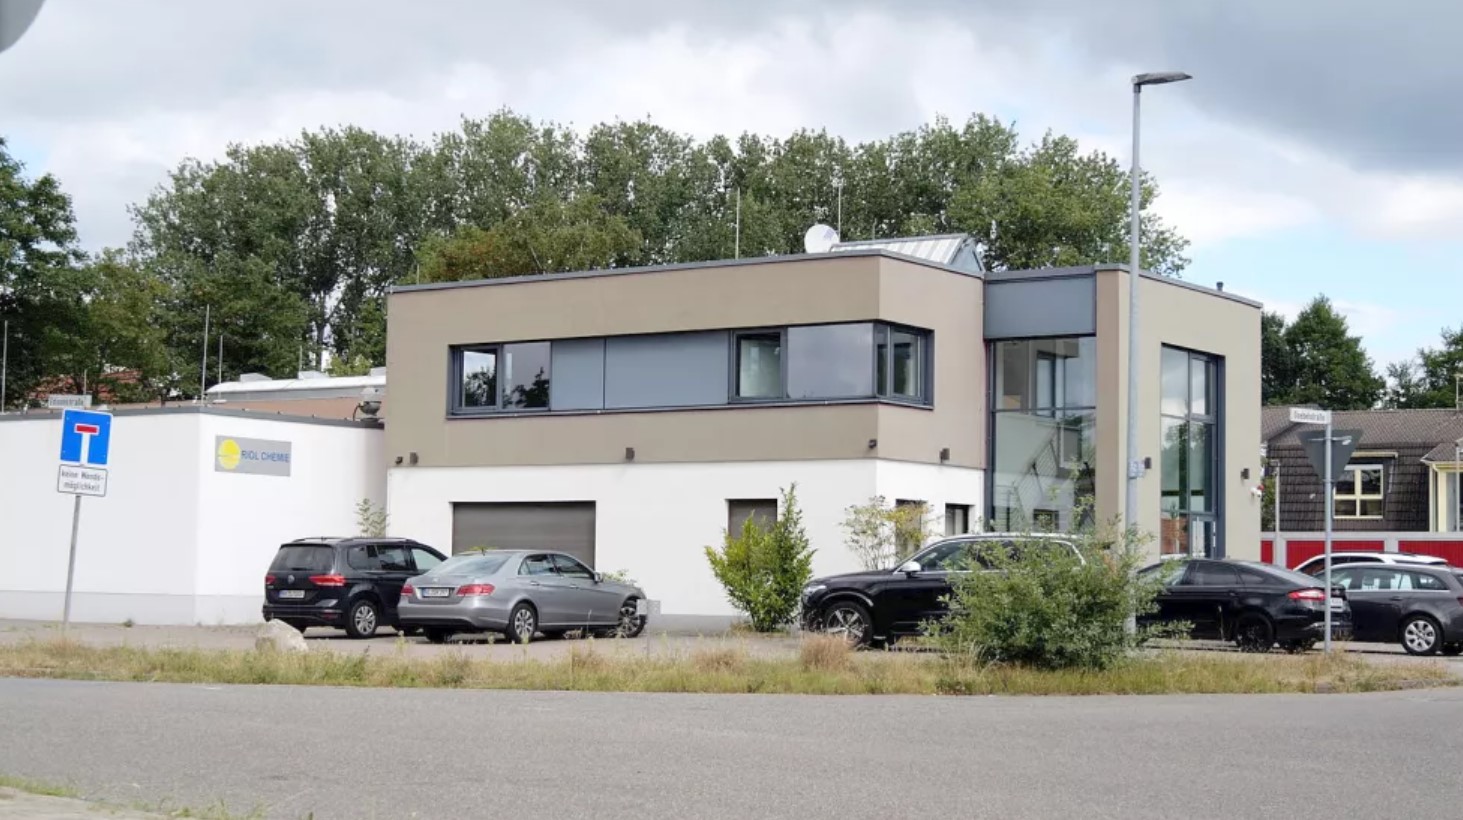 Німецькі митні слідчі провели обшук у приміщенні компанії Riol Chemie у Лілієнталі. Серпень 2022. Німеччина. Фото: Hüneke Film Production/Jörn Hüneke